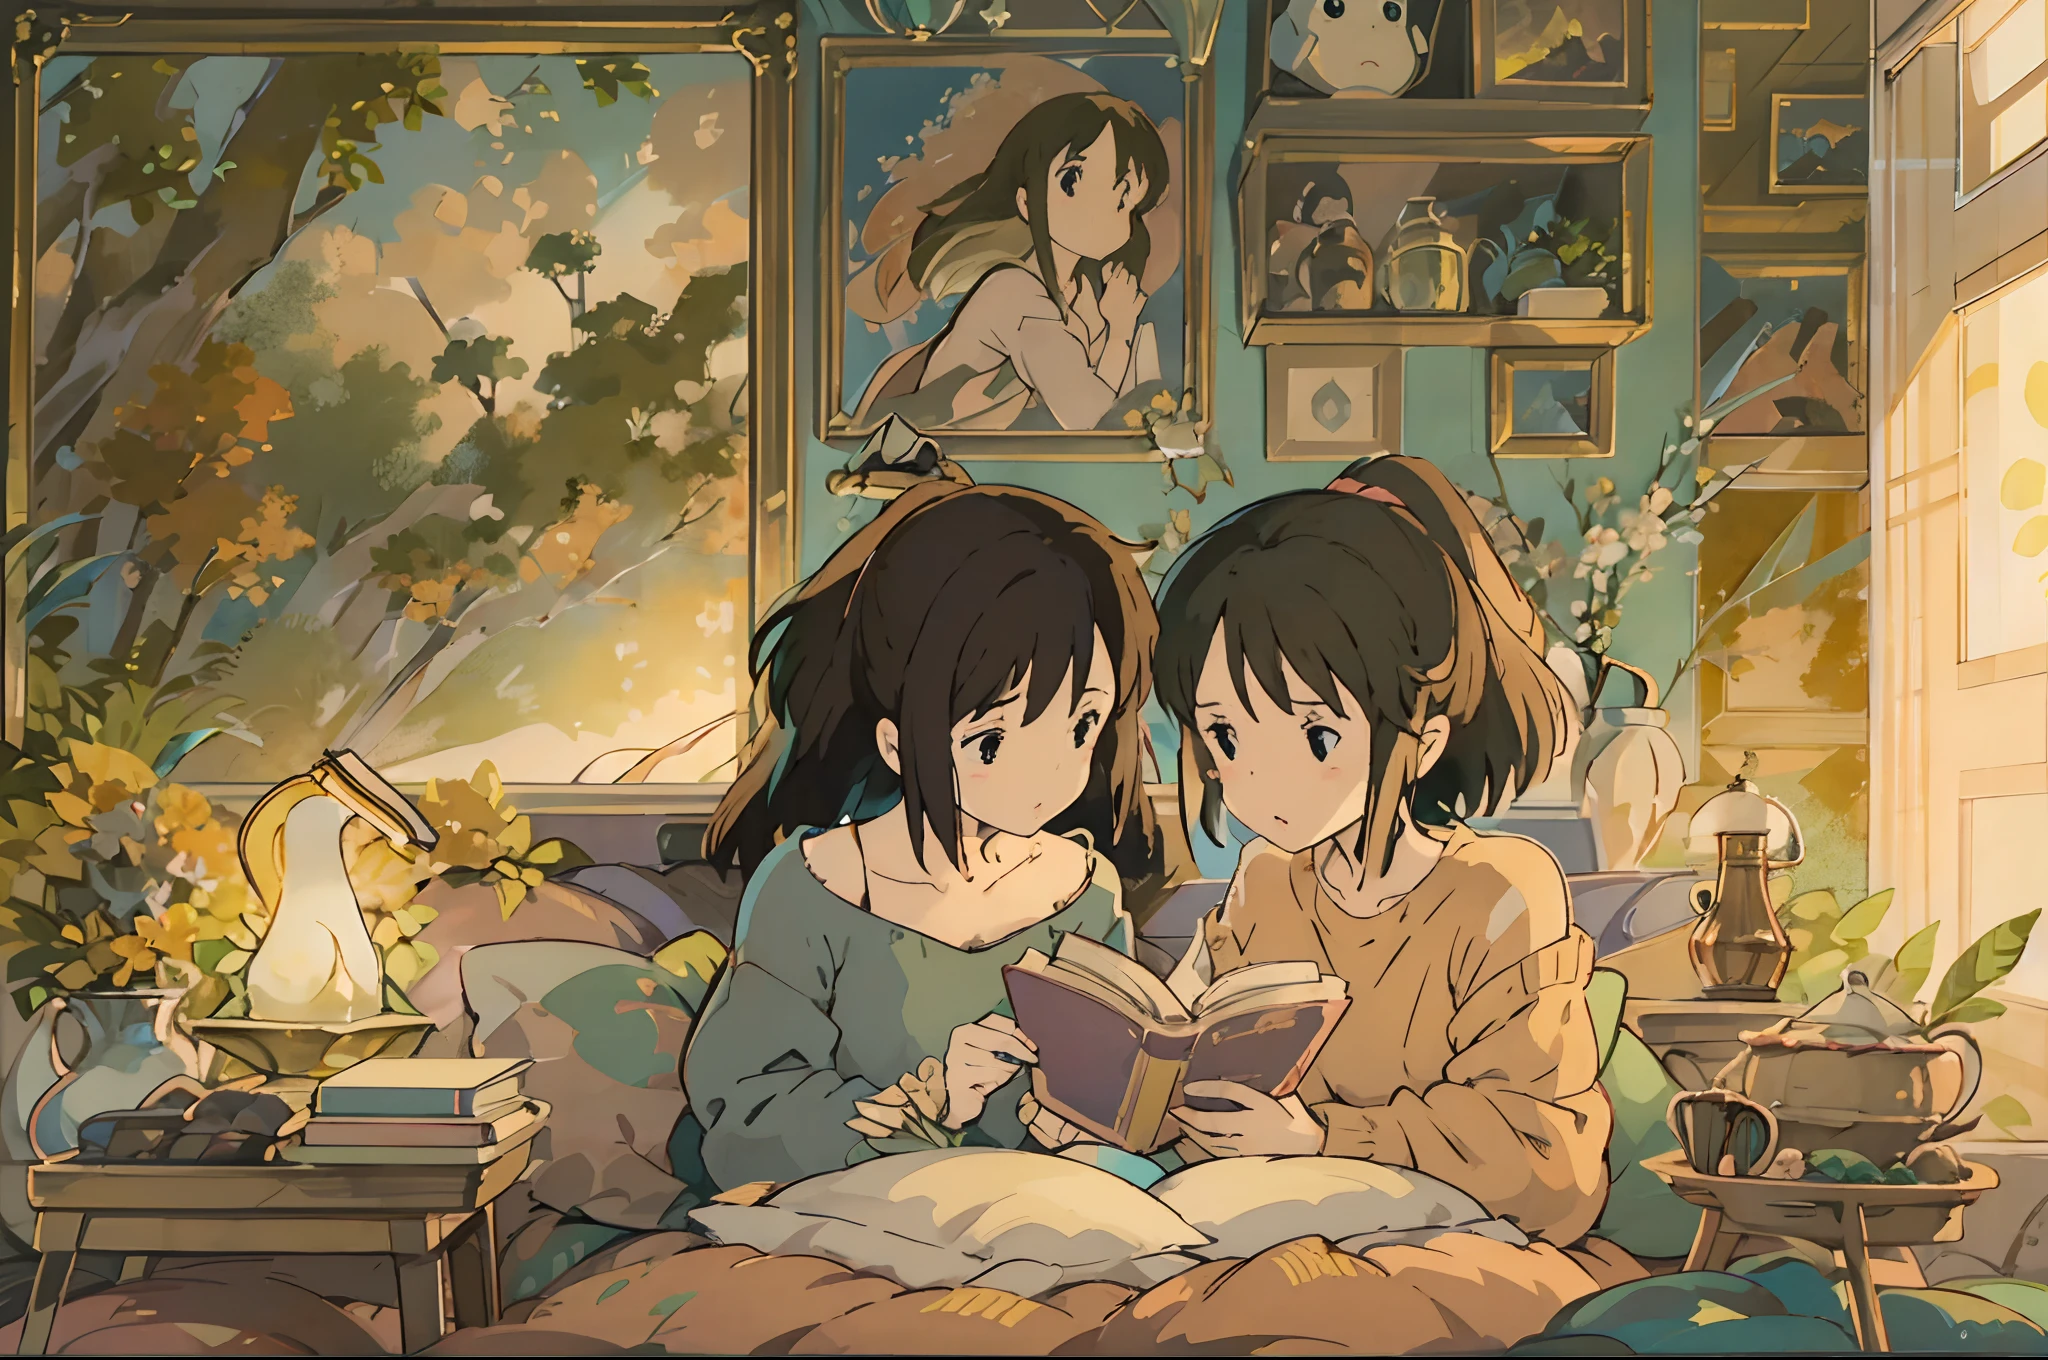 Eine digitale Illustration von 2 Mädchen, die völlig in das Lesen vertieft auf einem bequemen Bett liegen, inspiriert vom Stil von Hayao Miyazaki. Das Kunstwerk sollte mit bezaubernden und fesselnden Details gefüllt sein, einen Hauch von Fantasie ausstrahlend. Die Mädchen sollten schöne, faszinierende Augen mit aufwendigen Details, sowie wunderbar zarte Lippen. Die Szene sollte optisch ansprechend sein, mit einer gemütlichen und einladenden Umgebung. Die Illustration sollte mit verschiedenen Medien erstellt werden, wie digitale Illustration, um den visuellen Gesamteffekt zu verbessern. Die Liebe zum Detail sollte bemerkenswert sein, Sicherstellung, dass jedes Element mit höchster Präzision abgebildet wird. Das Bild sollte eine extrem hohe Qualität besitzen, mit einer Auflösung von 4k oder 8k, und ein eigenständiges Meisterwerk sein. Der Stil des Kunstwerks sollte die Essenz von Hayao Miyazakis berühmten Werken einfangen, präsentiert eine einzigartige Mischung aus Fantasie, Geschichtenerzählen, und lebendige Bilder. Die verwendeten Farben sollten warm und einladend sein, Schaffen einer beruhigenden und gemütlichen Atmosphäre. Die Beleuchtung sollte gekonnt wiedergegeben werden, Beleuchtung der Szene auf weiche und sanfte Weise. Gesamt, Die Illustration soll den Betrachter in eine Welt voller Wunder und Magie entführen, wo sie sich voll und ganz der Freude am Lesen hingeben können. Die Kombination von Miyazakis ikonischem Stil, bezaubernde Details, warme Töne, und ein Hauch von Fantasie sollten zusammenkommen, um ein beeindruckendes und fesselndes Kunstwerk zu schaffen.